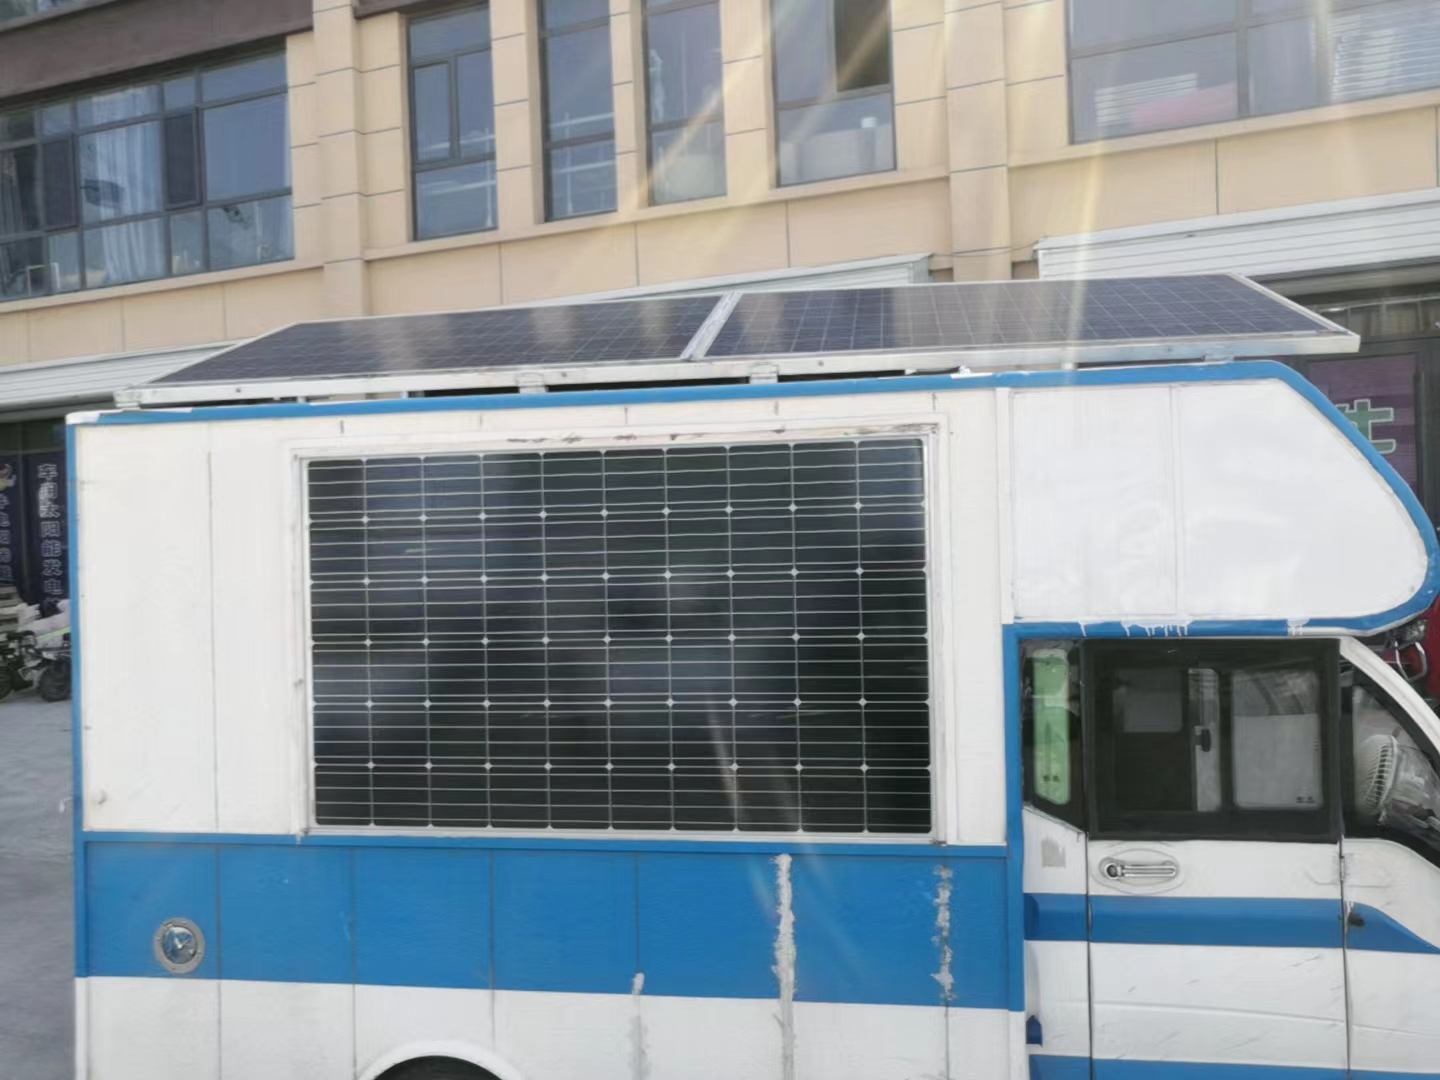 房车安装太阳能发电板 出游世界都不用担心用电问题